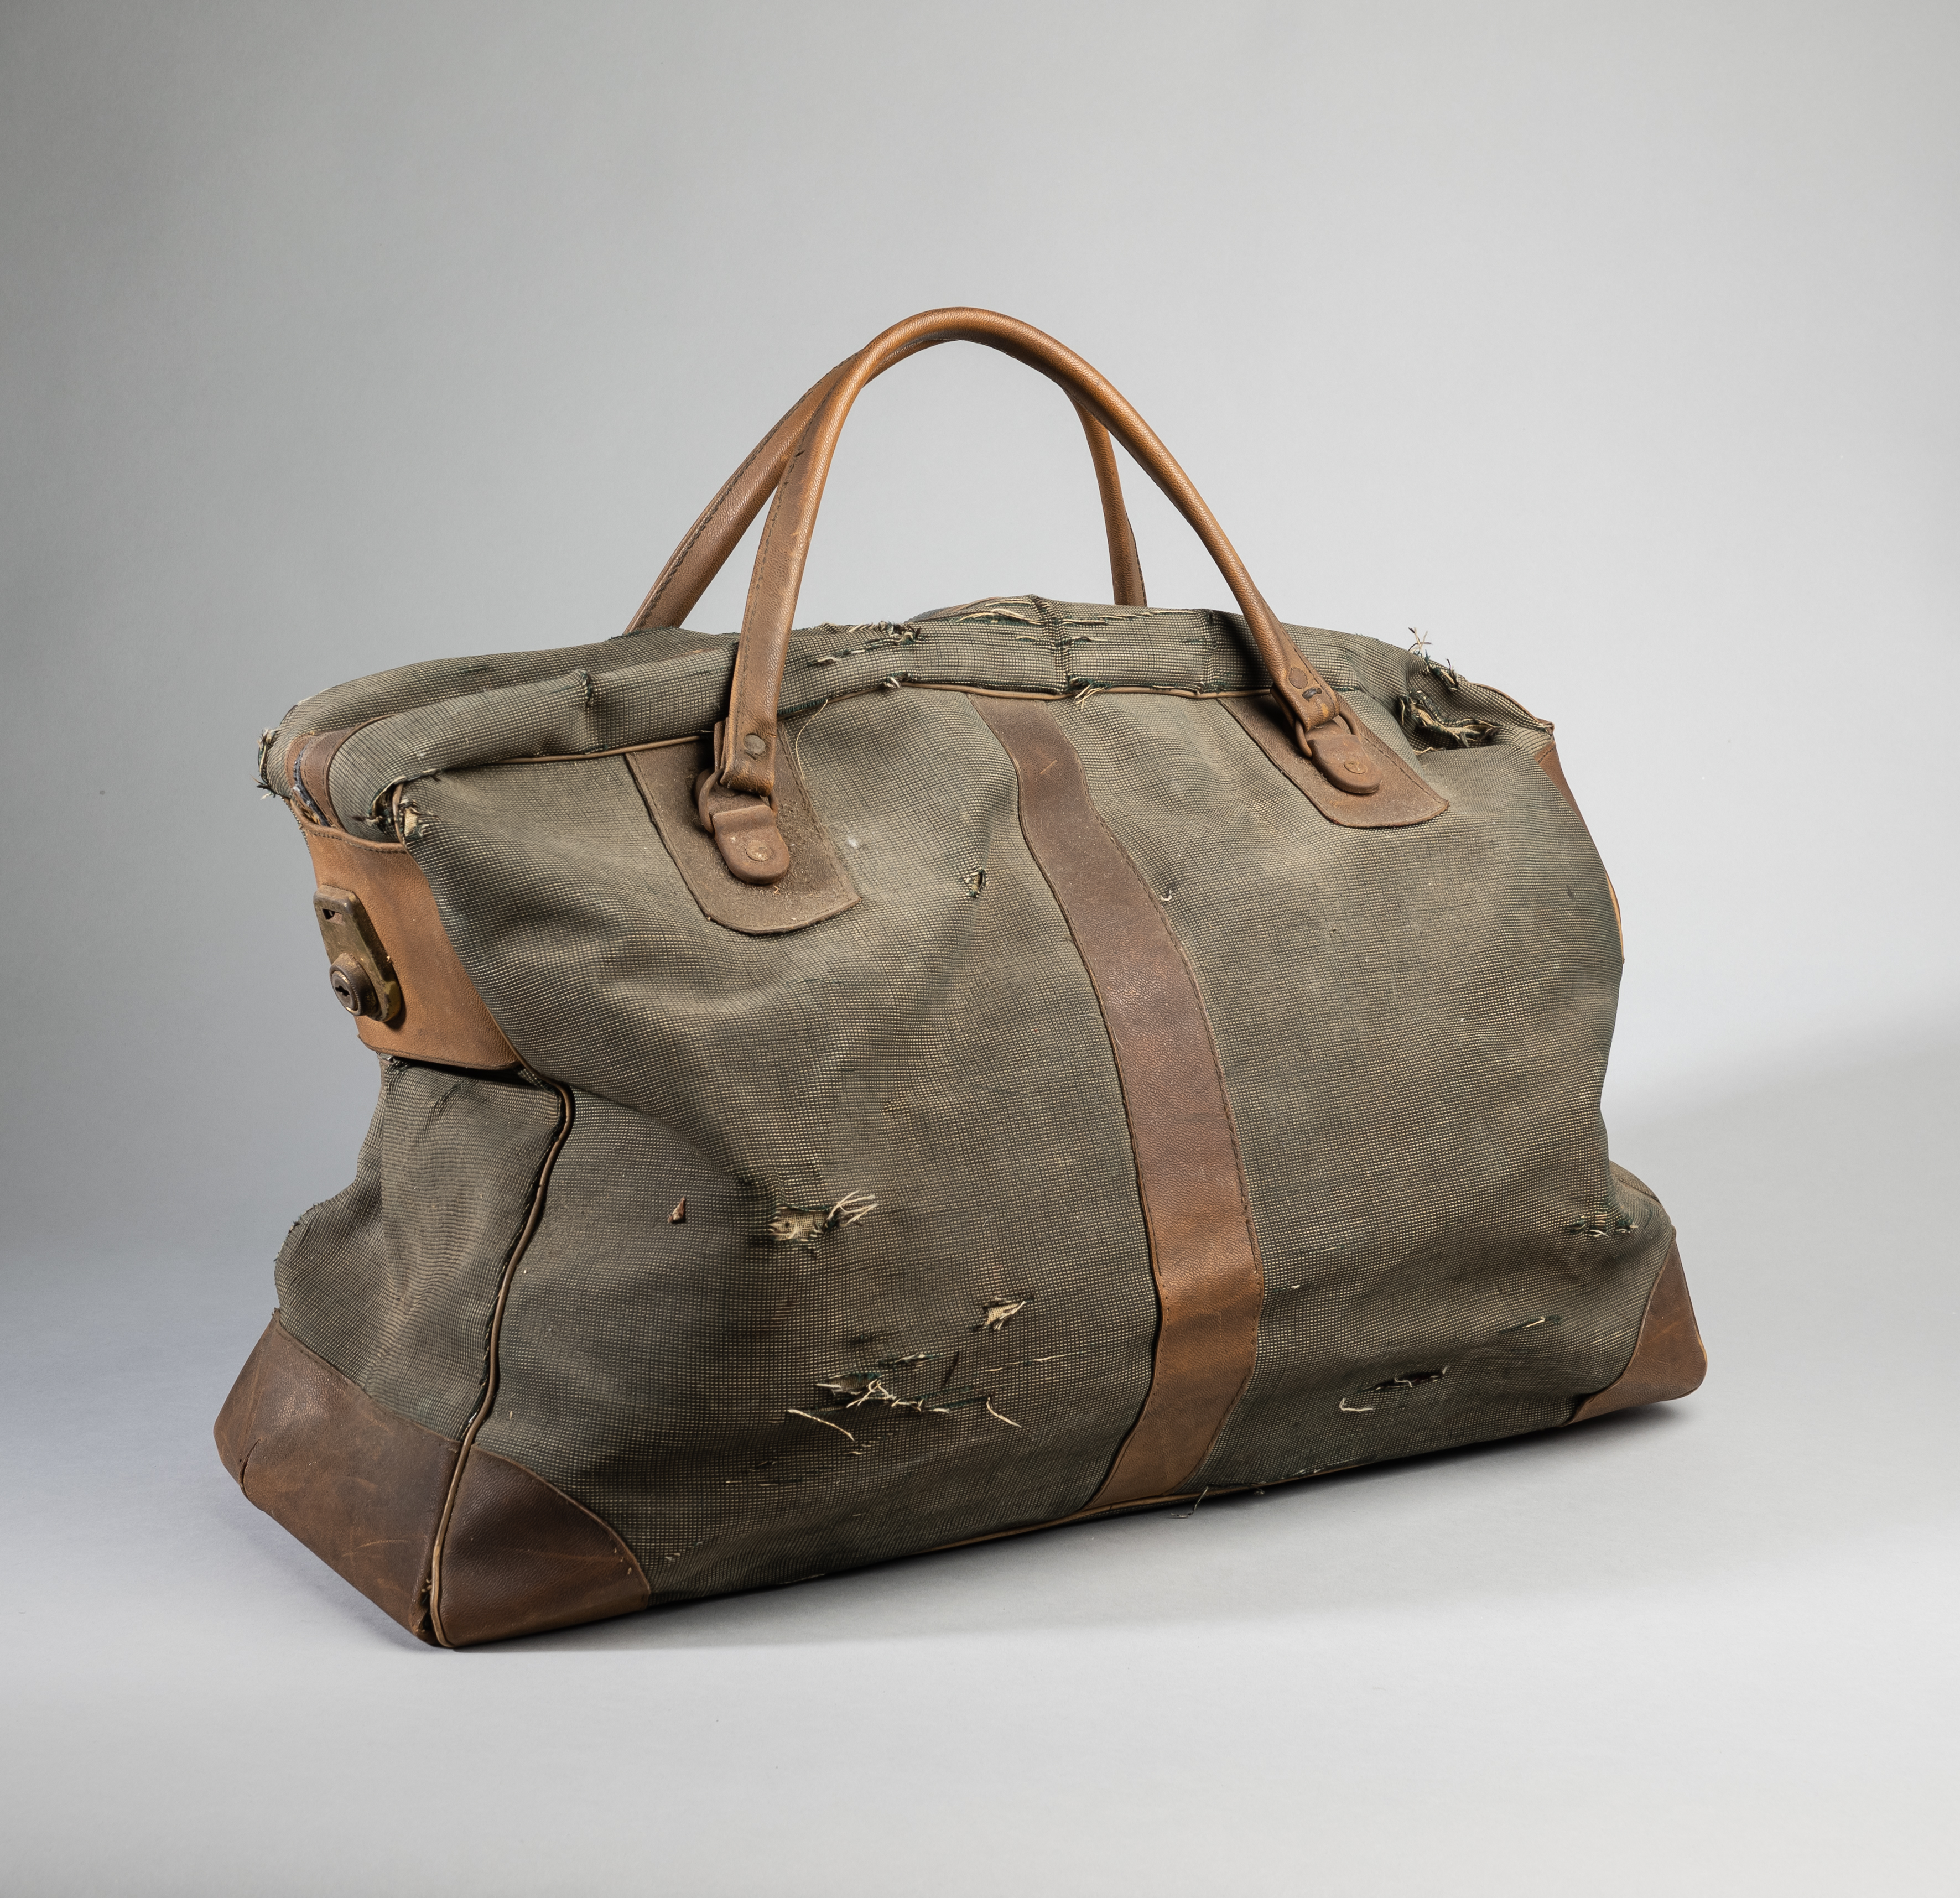 Duncan Edwards' bag